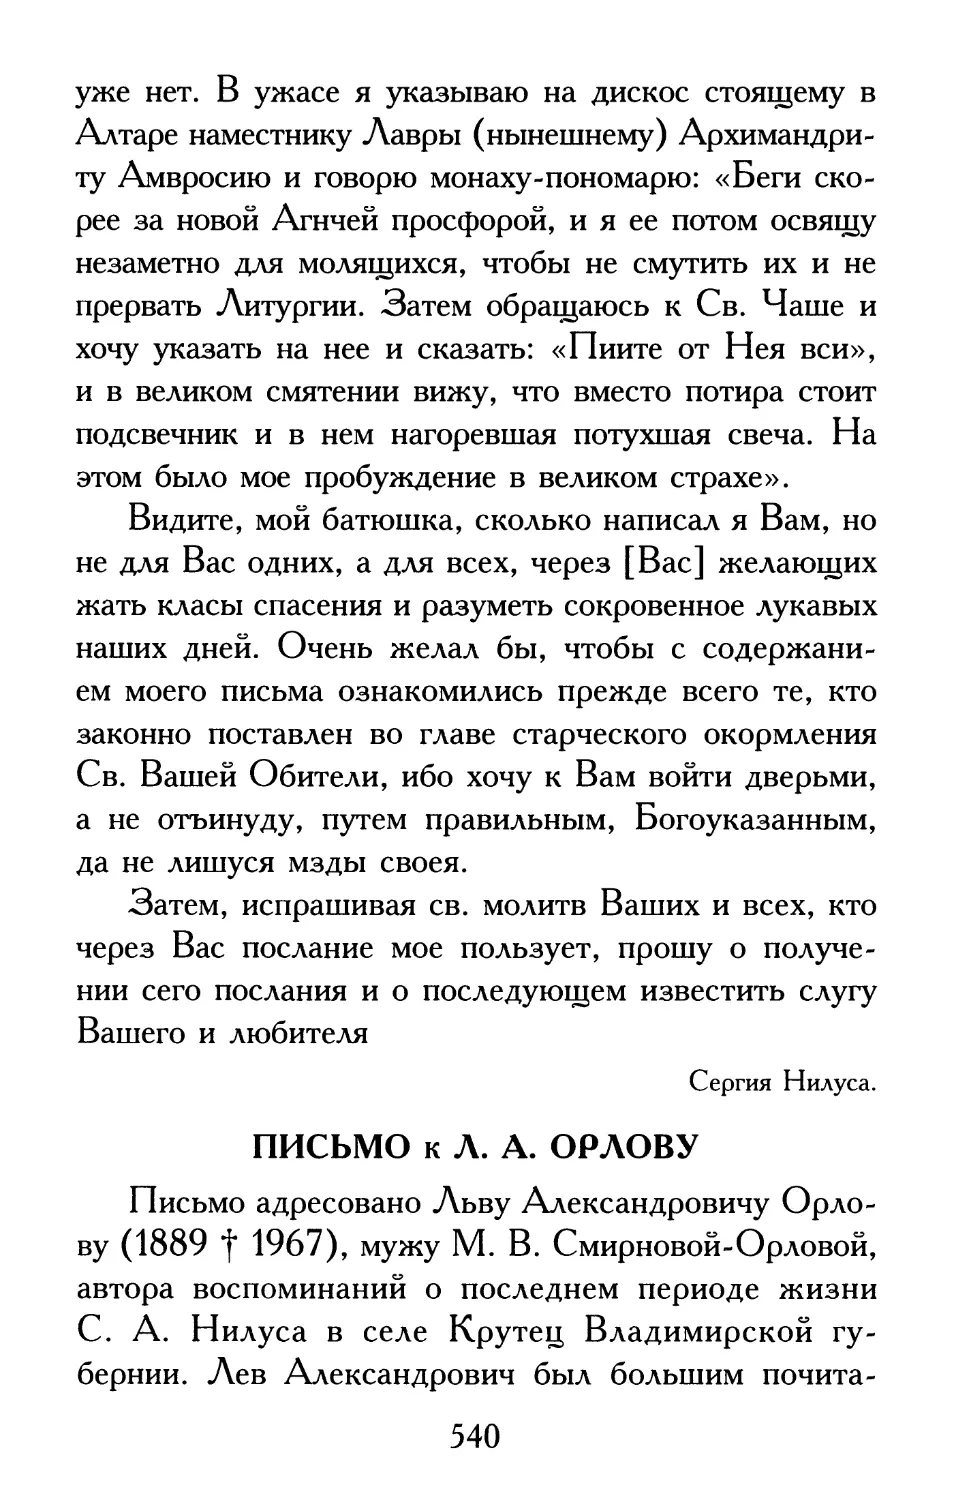 Письмо к Л. А. Орлову